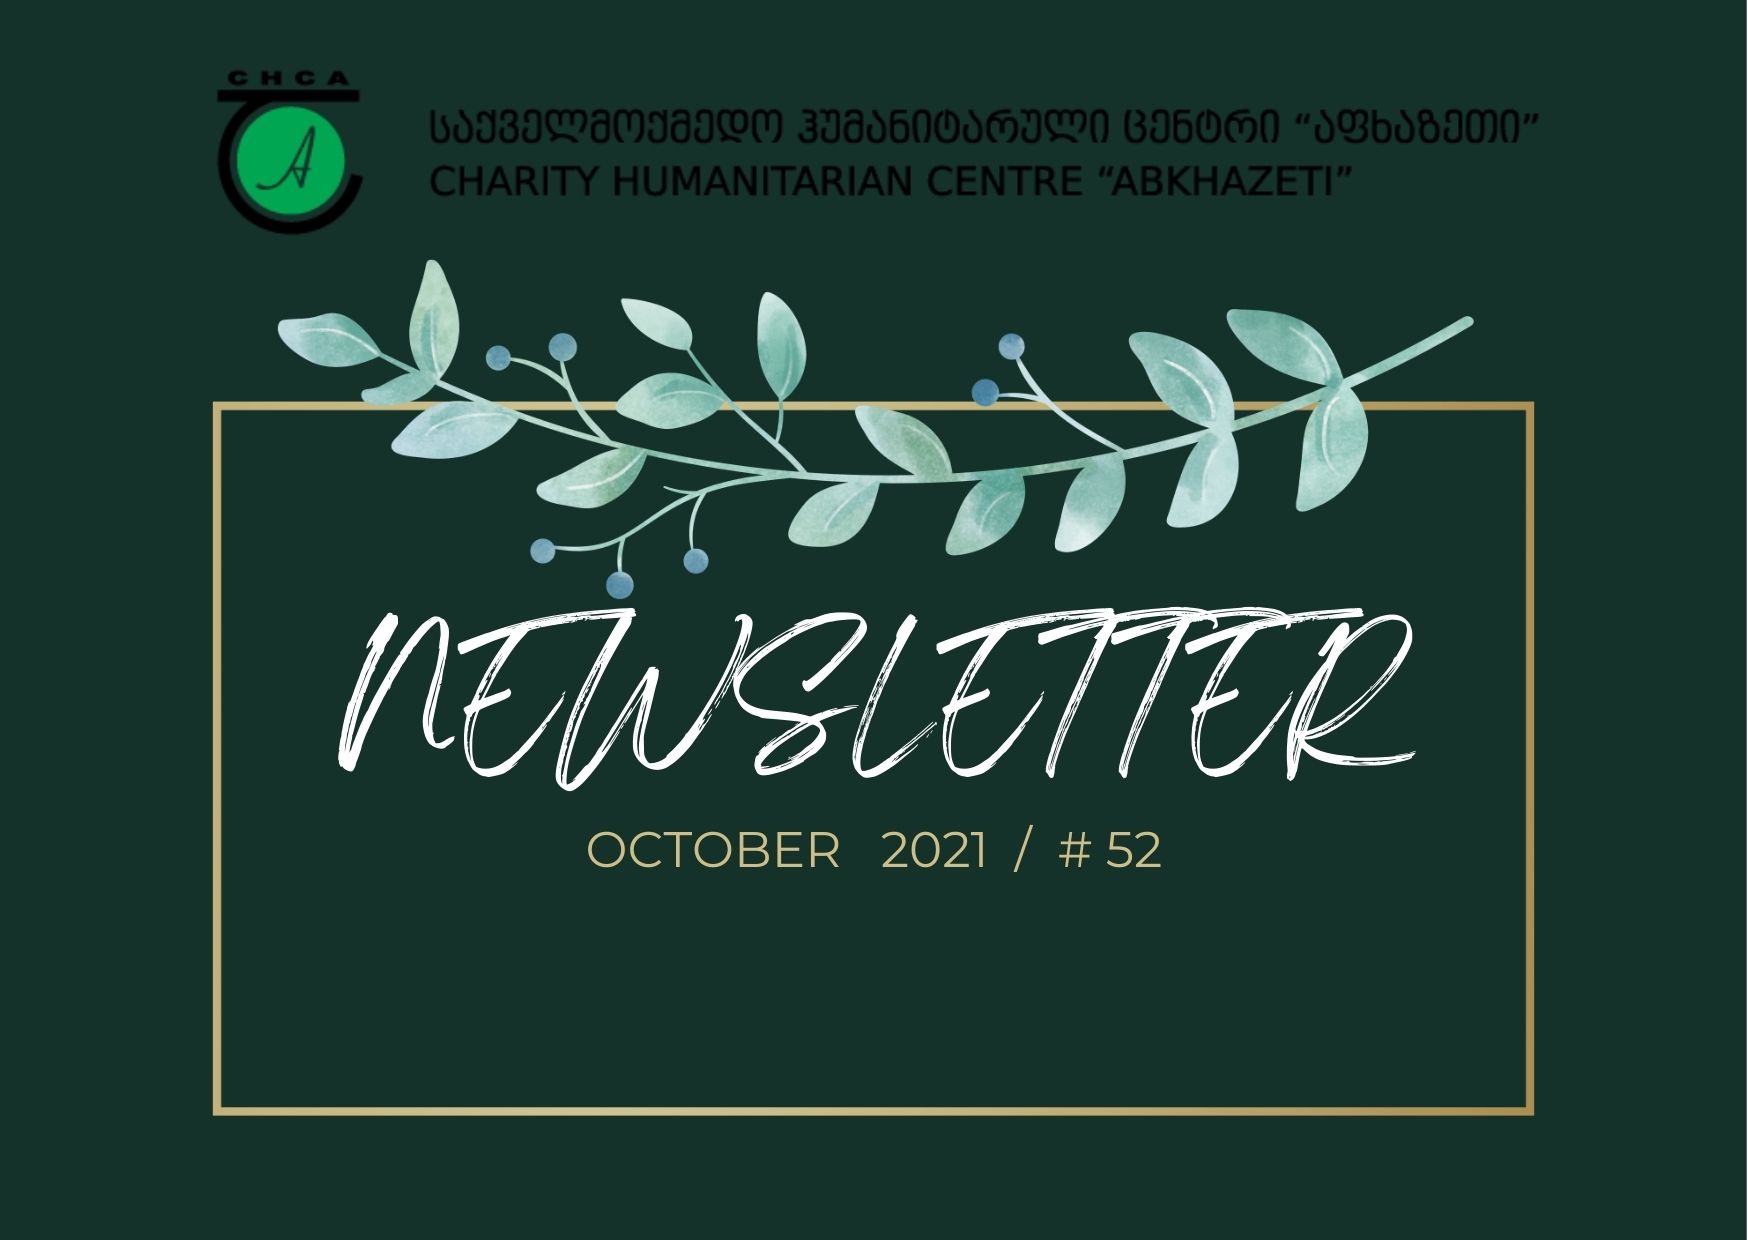 Newsletter - October 2021